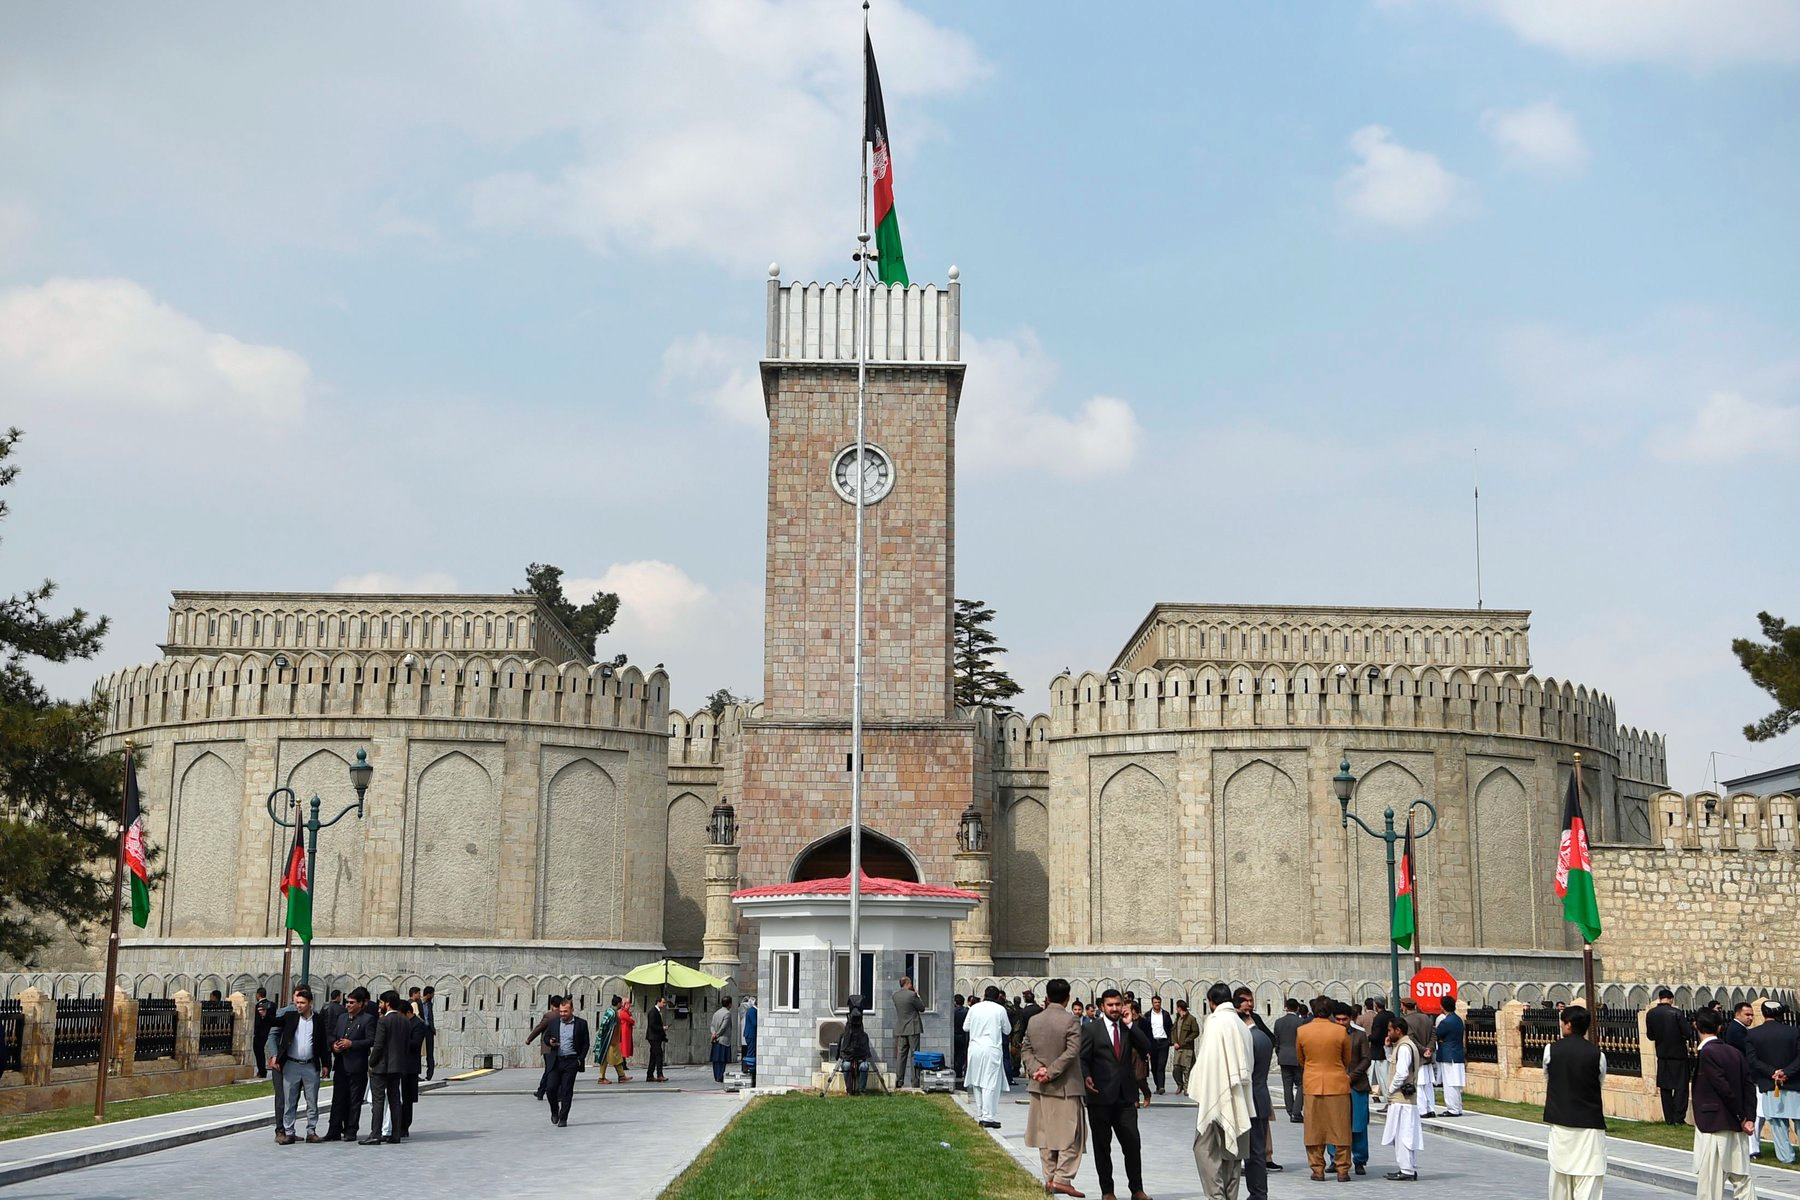 अफगानी राष्ट्रपति कार्यालयका २० कर्मचारीलाई कोरोना संंक्रमण